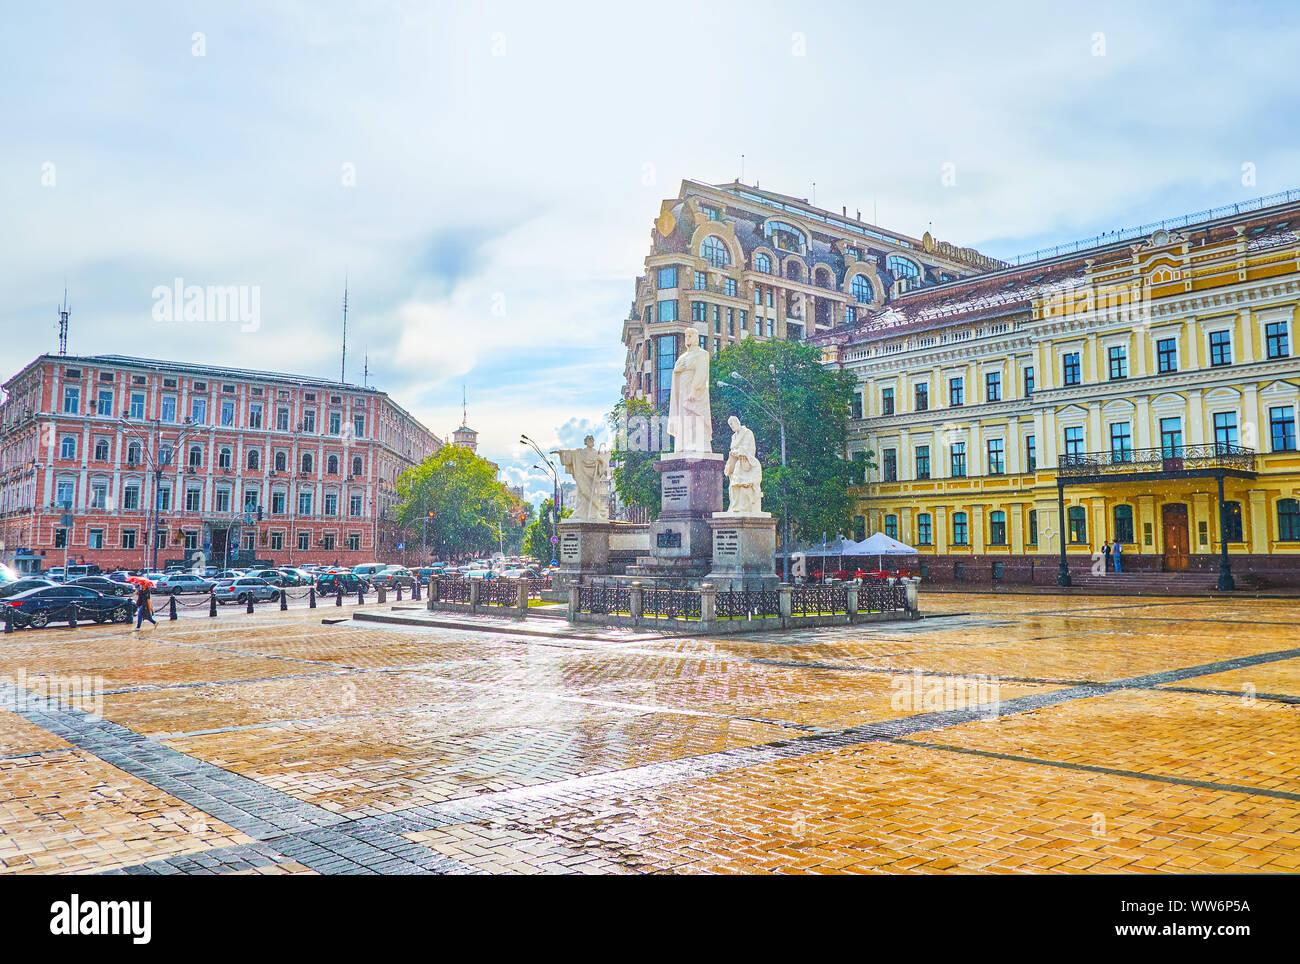 Kiew, Ukraine - Juli 10, 2019: Die angenehme Wanderung im Sommer Regen in Saint Michael Square beobachten szenische Skulptur der Prinzessin Olga, die ru Stockfoto